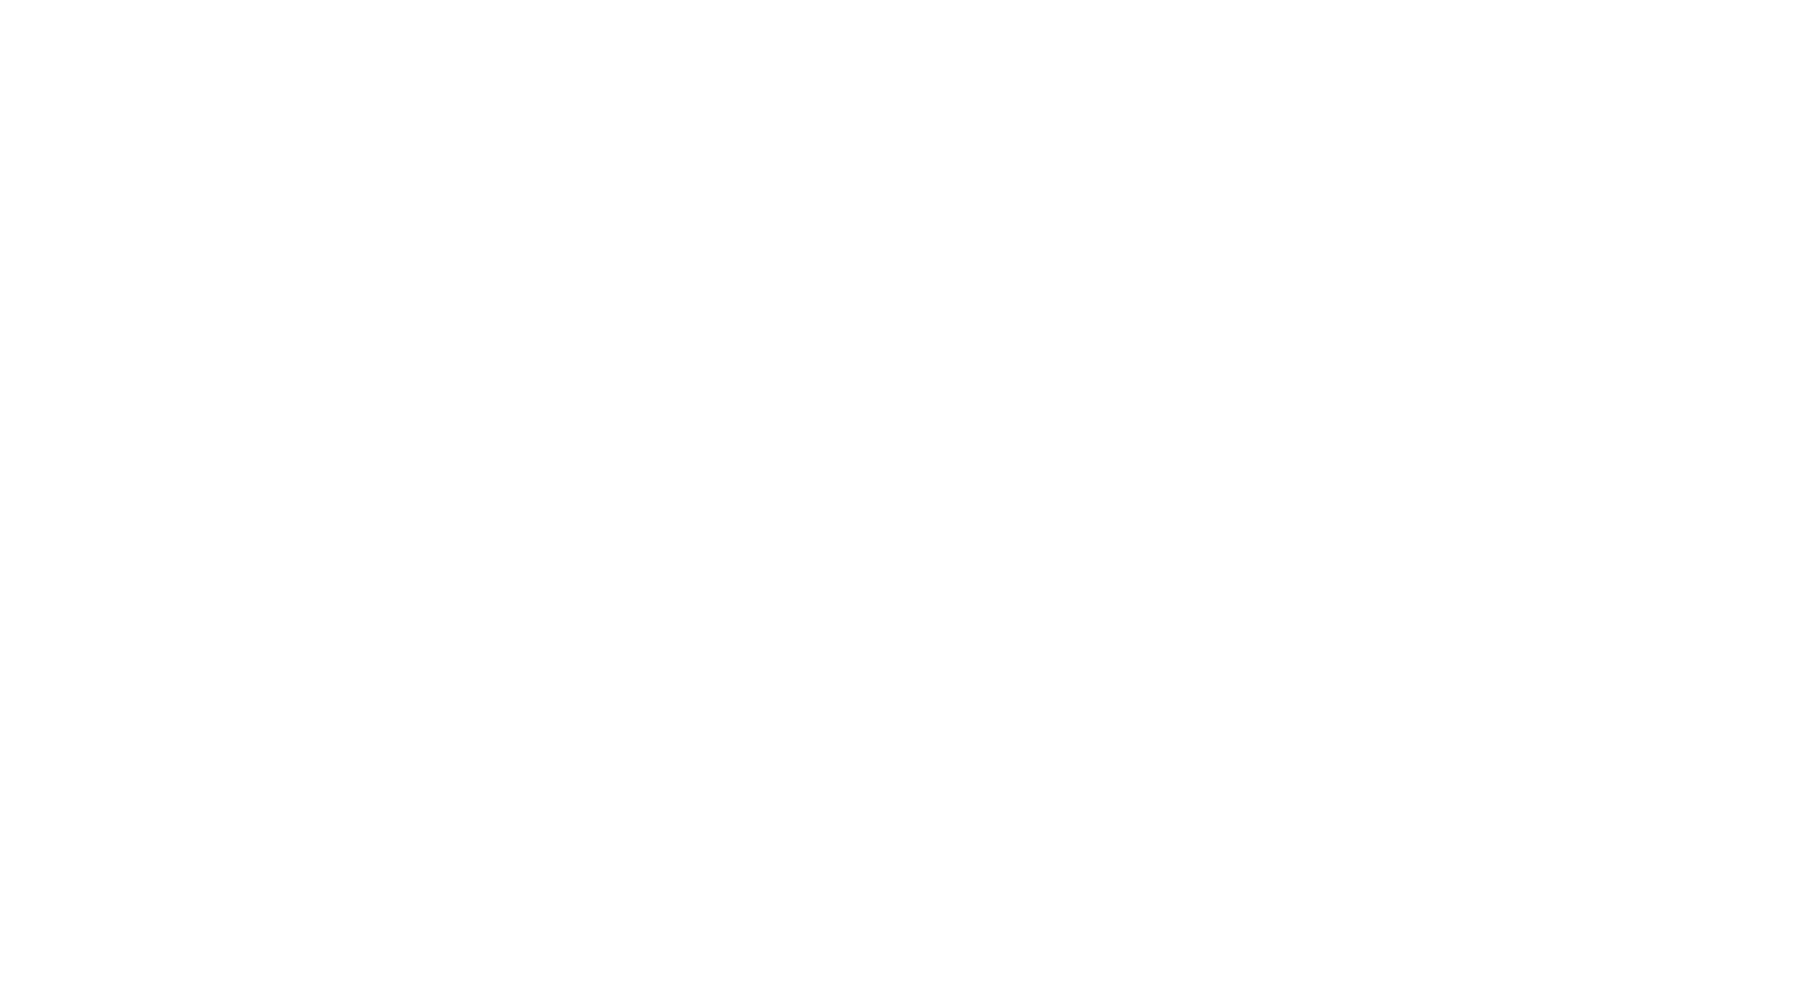 Pilchuck Development